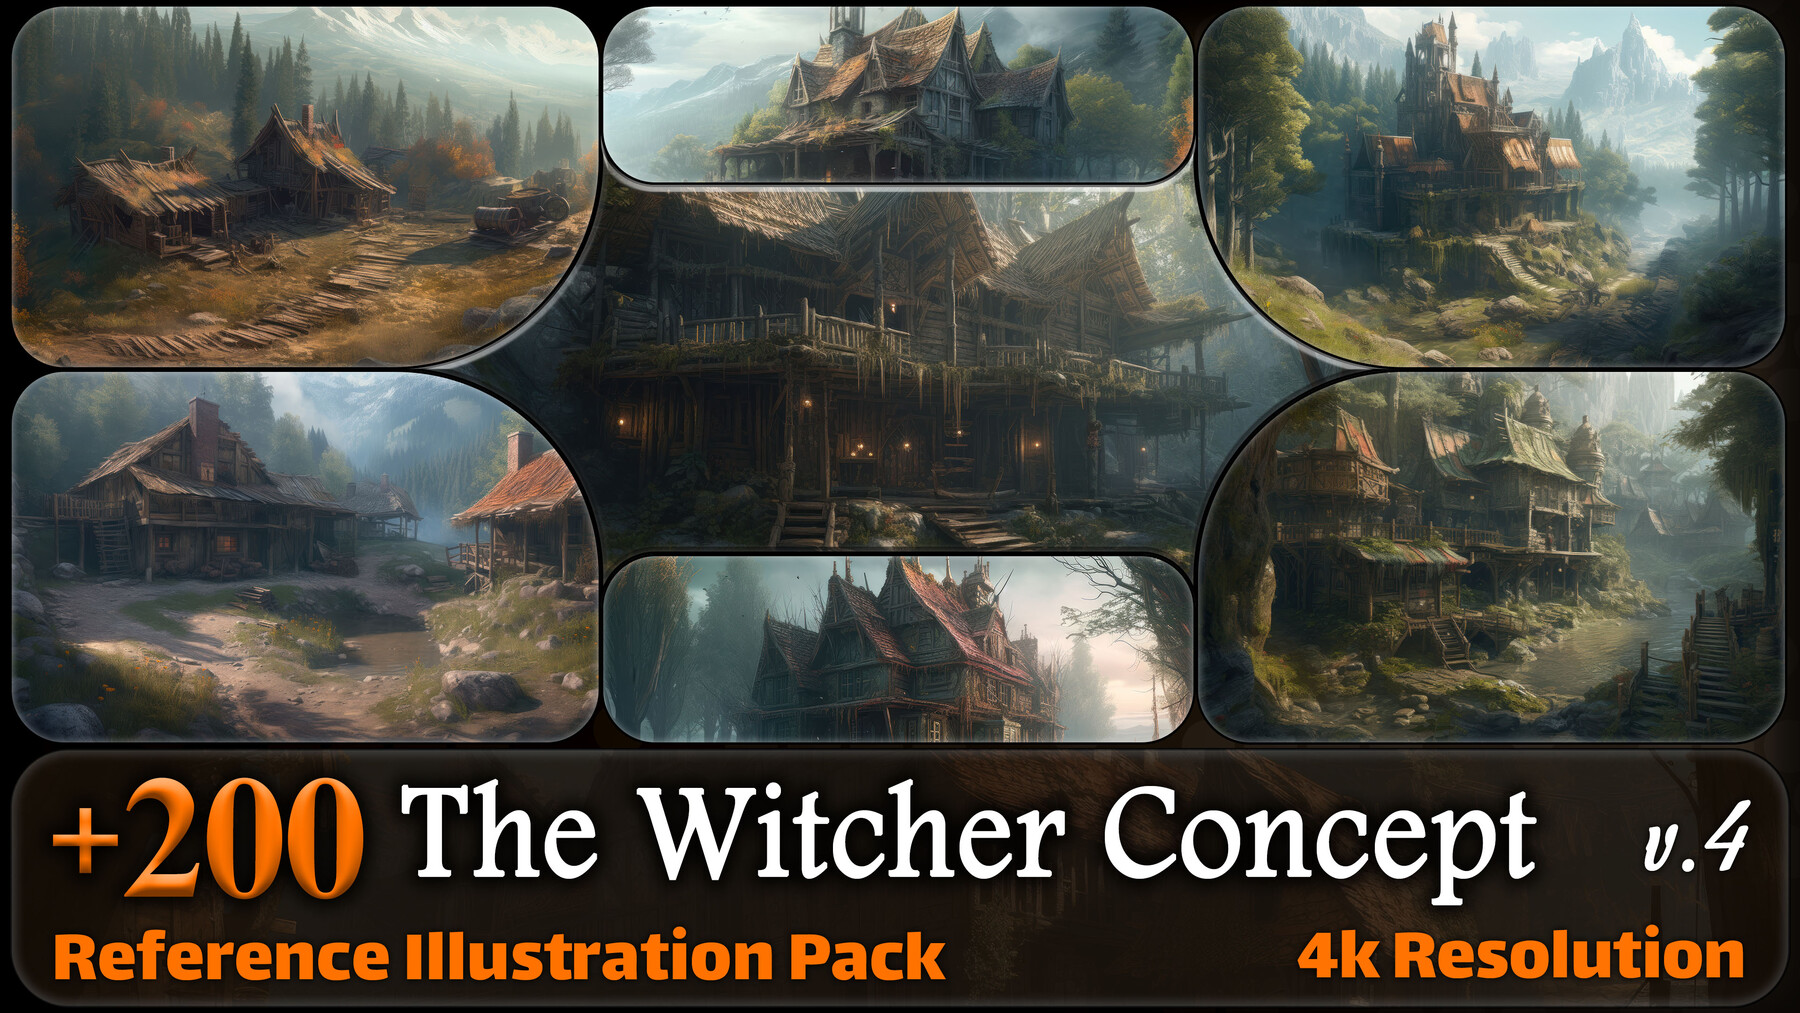 The Witcher 3 tem mais de 200 horas de duração